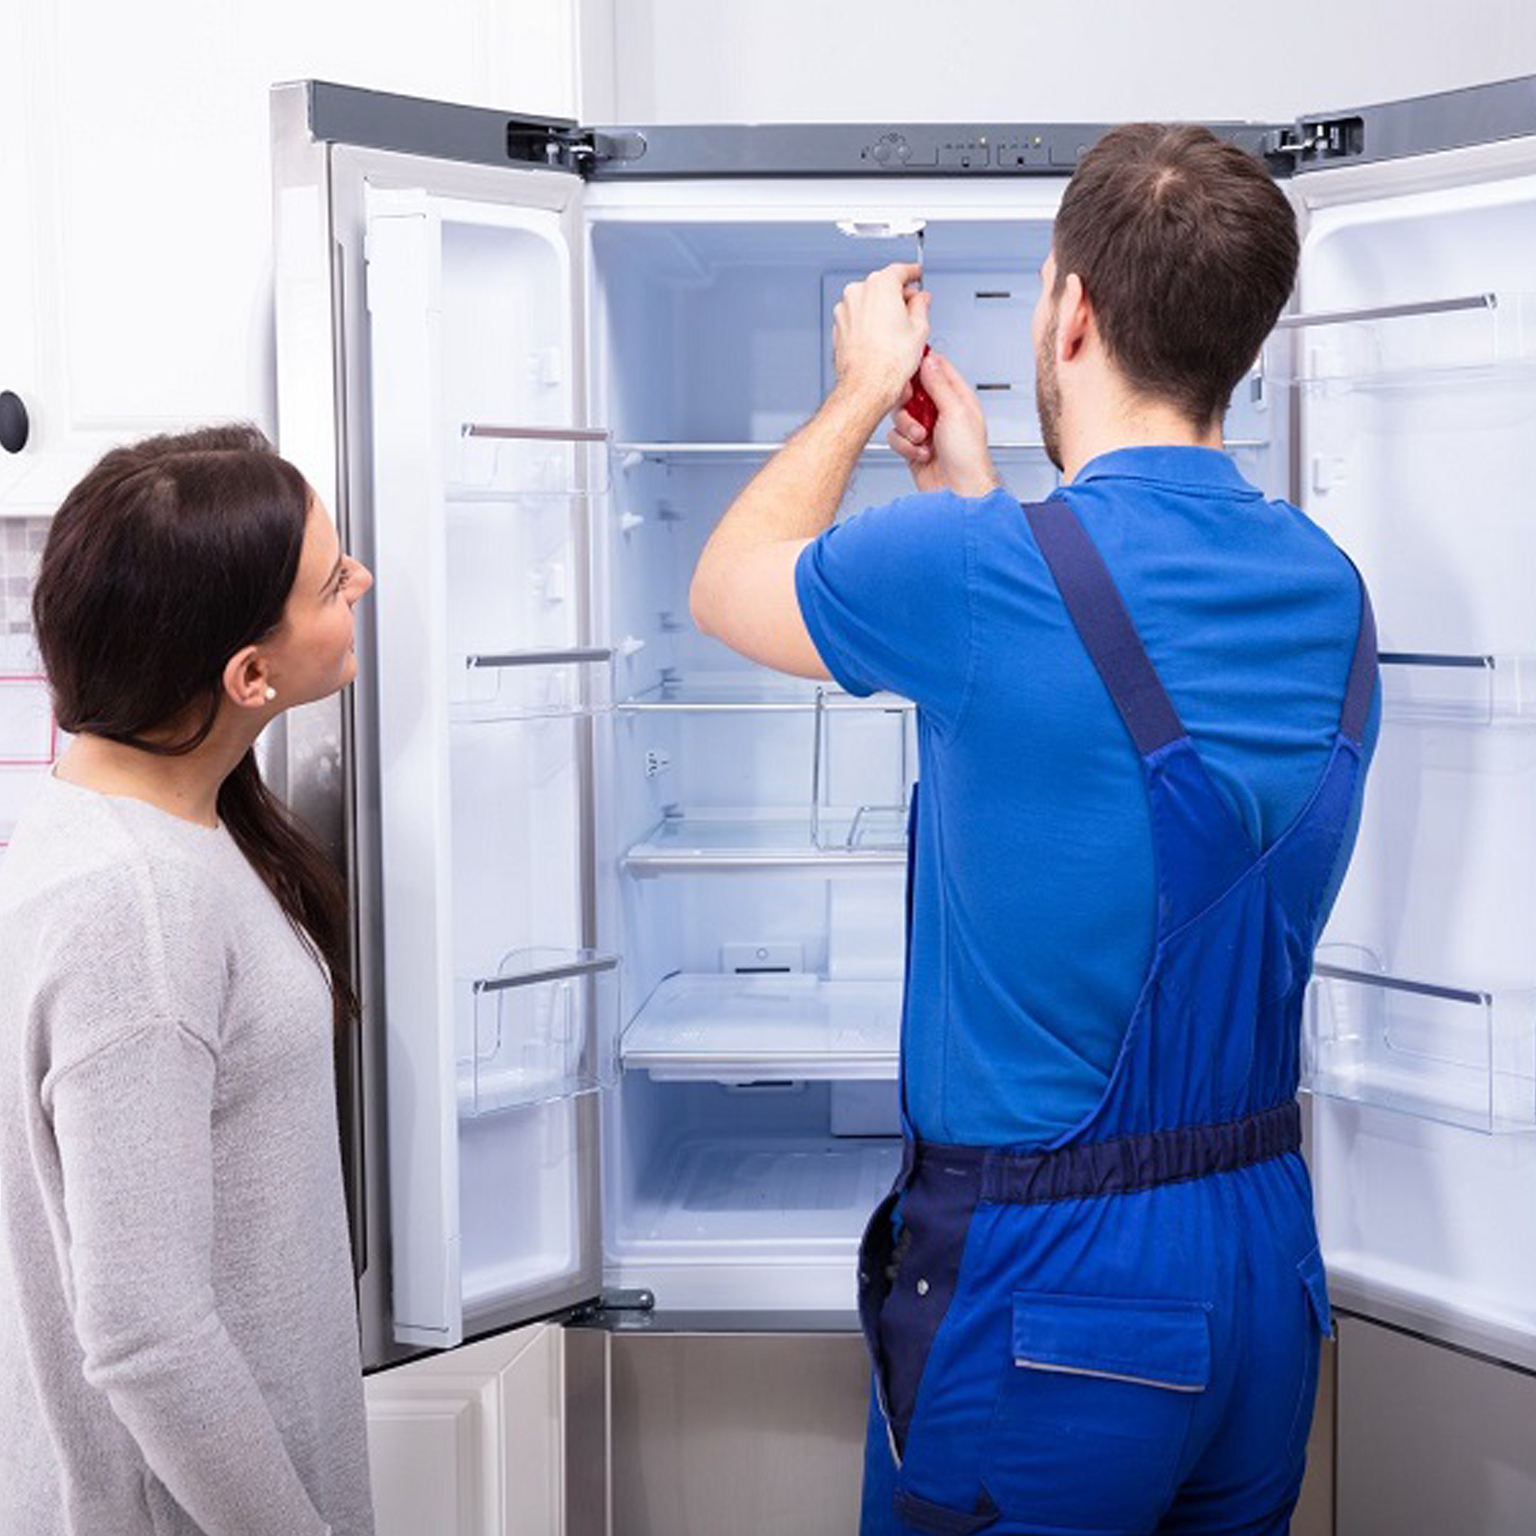 Sửa chữa tủ lạnh tại nhà